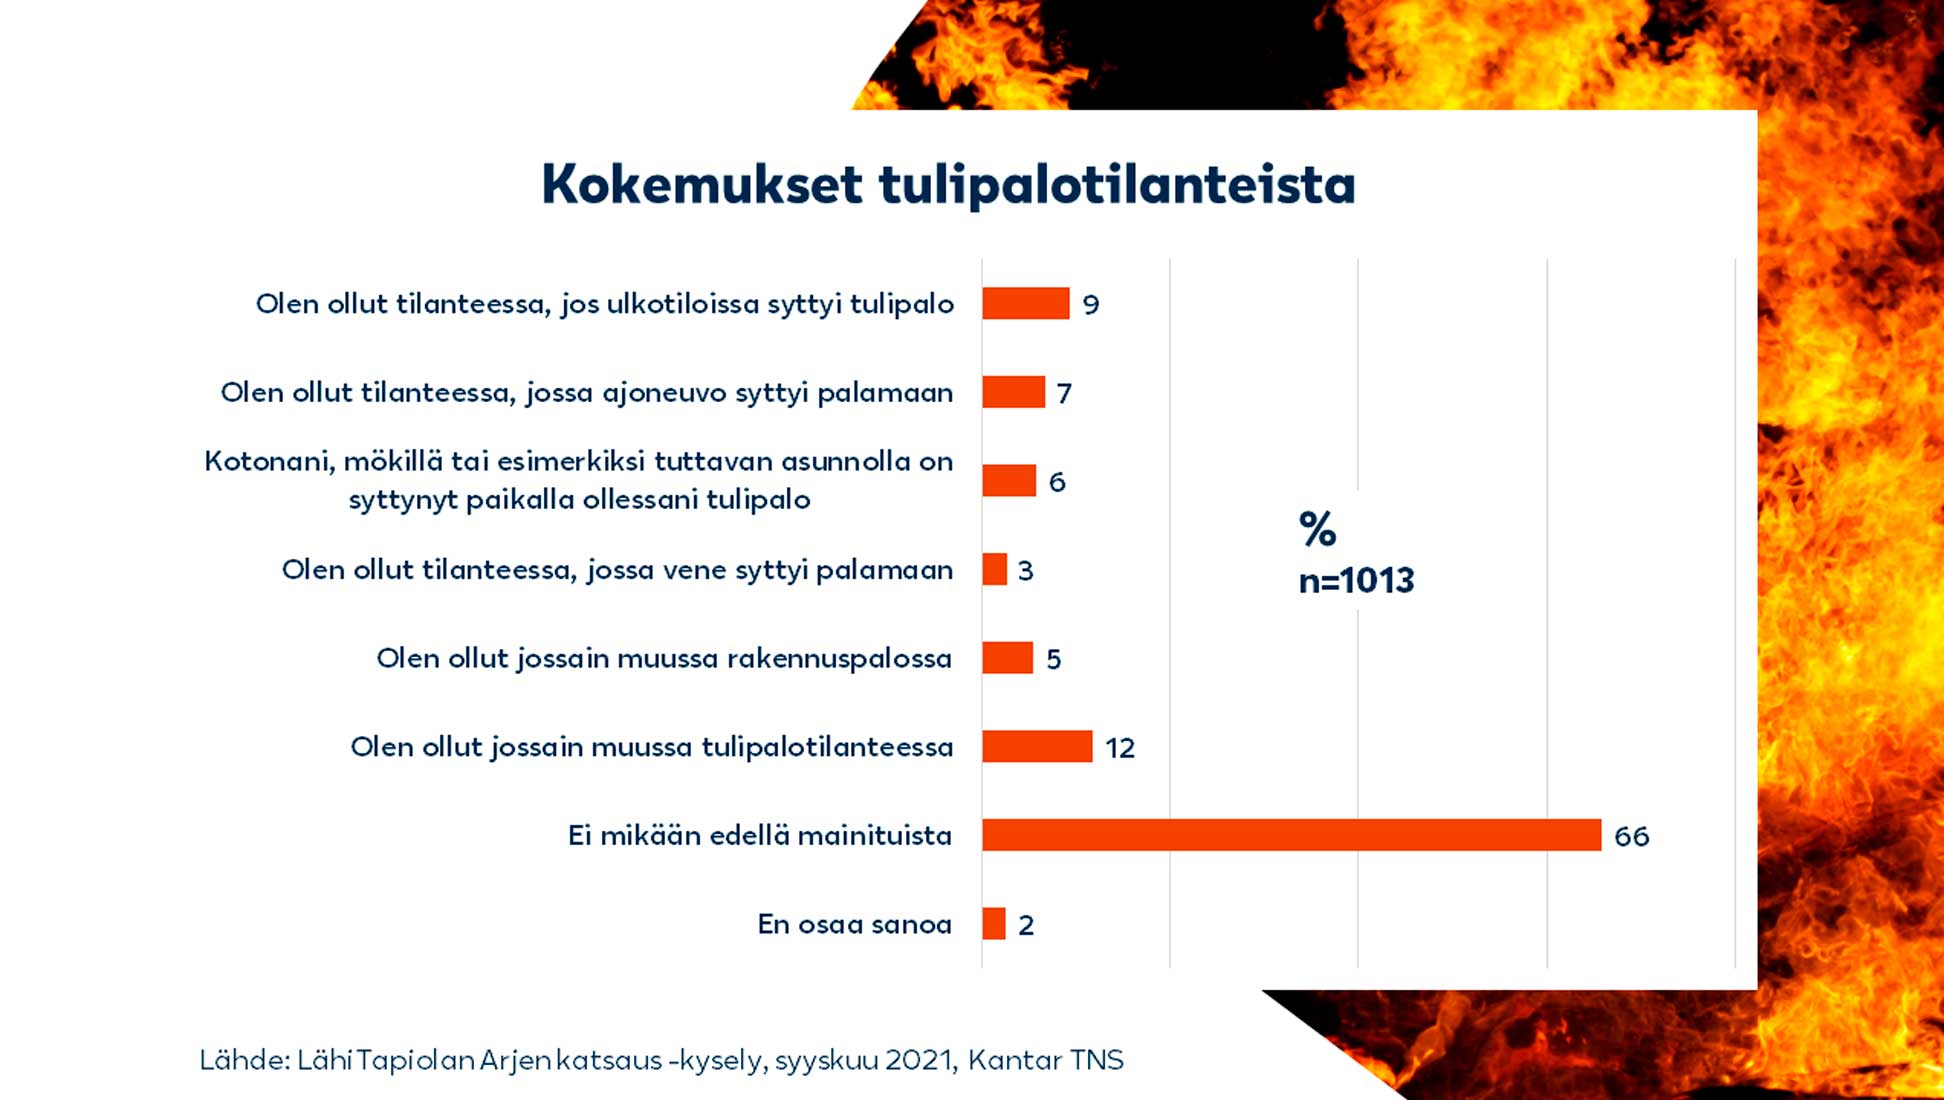 Kuvassa on avattu Arjen katsaus -kyselyn tuloksia tarkemmin. Noin joka kolmas suomalainen on ollut jonkinlaisessa tulipalotilanteessa.